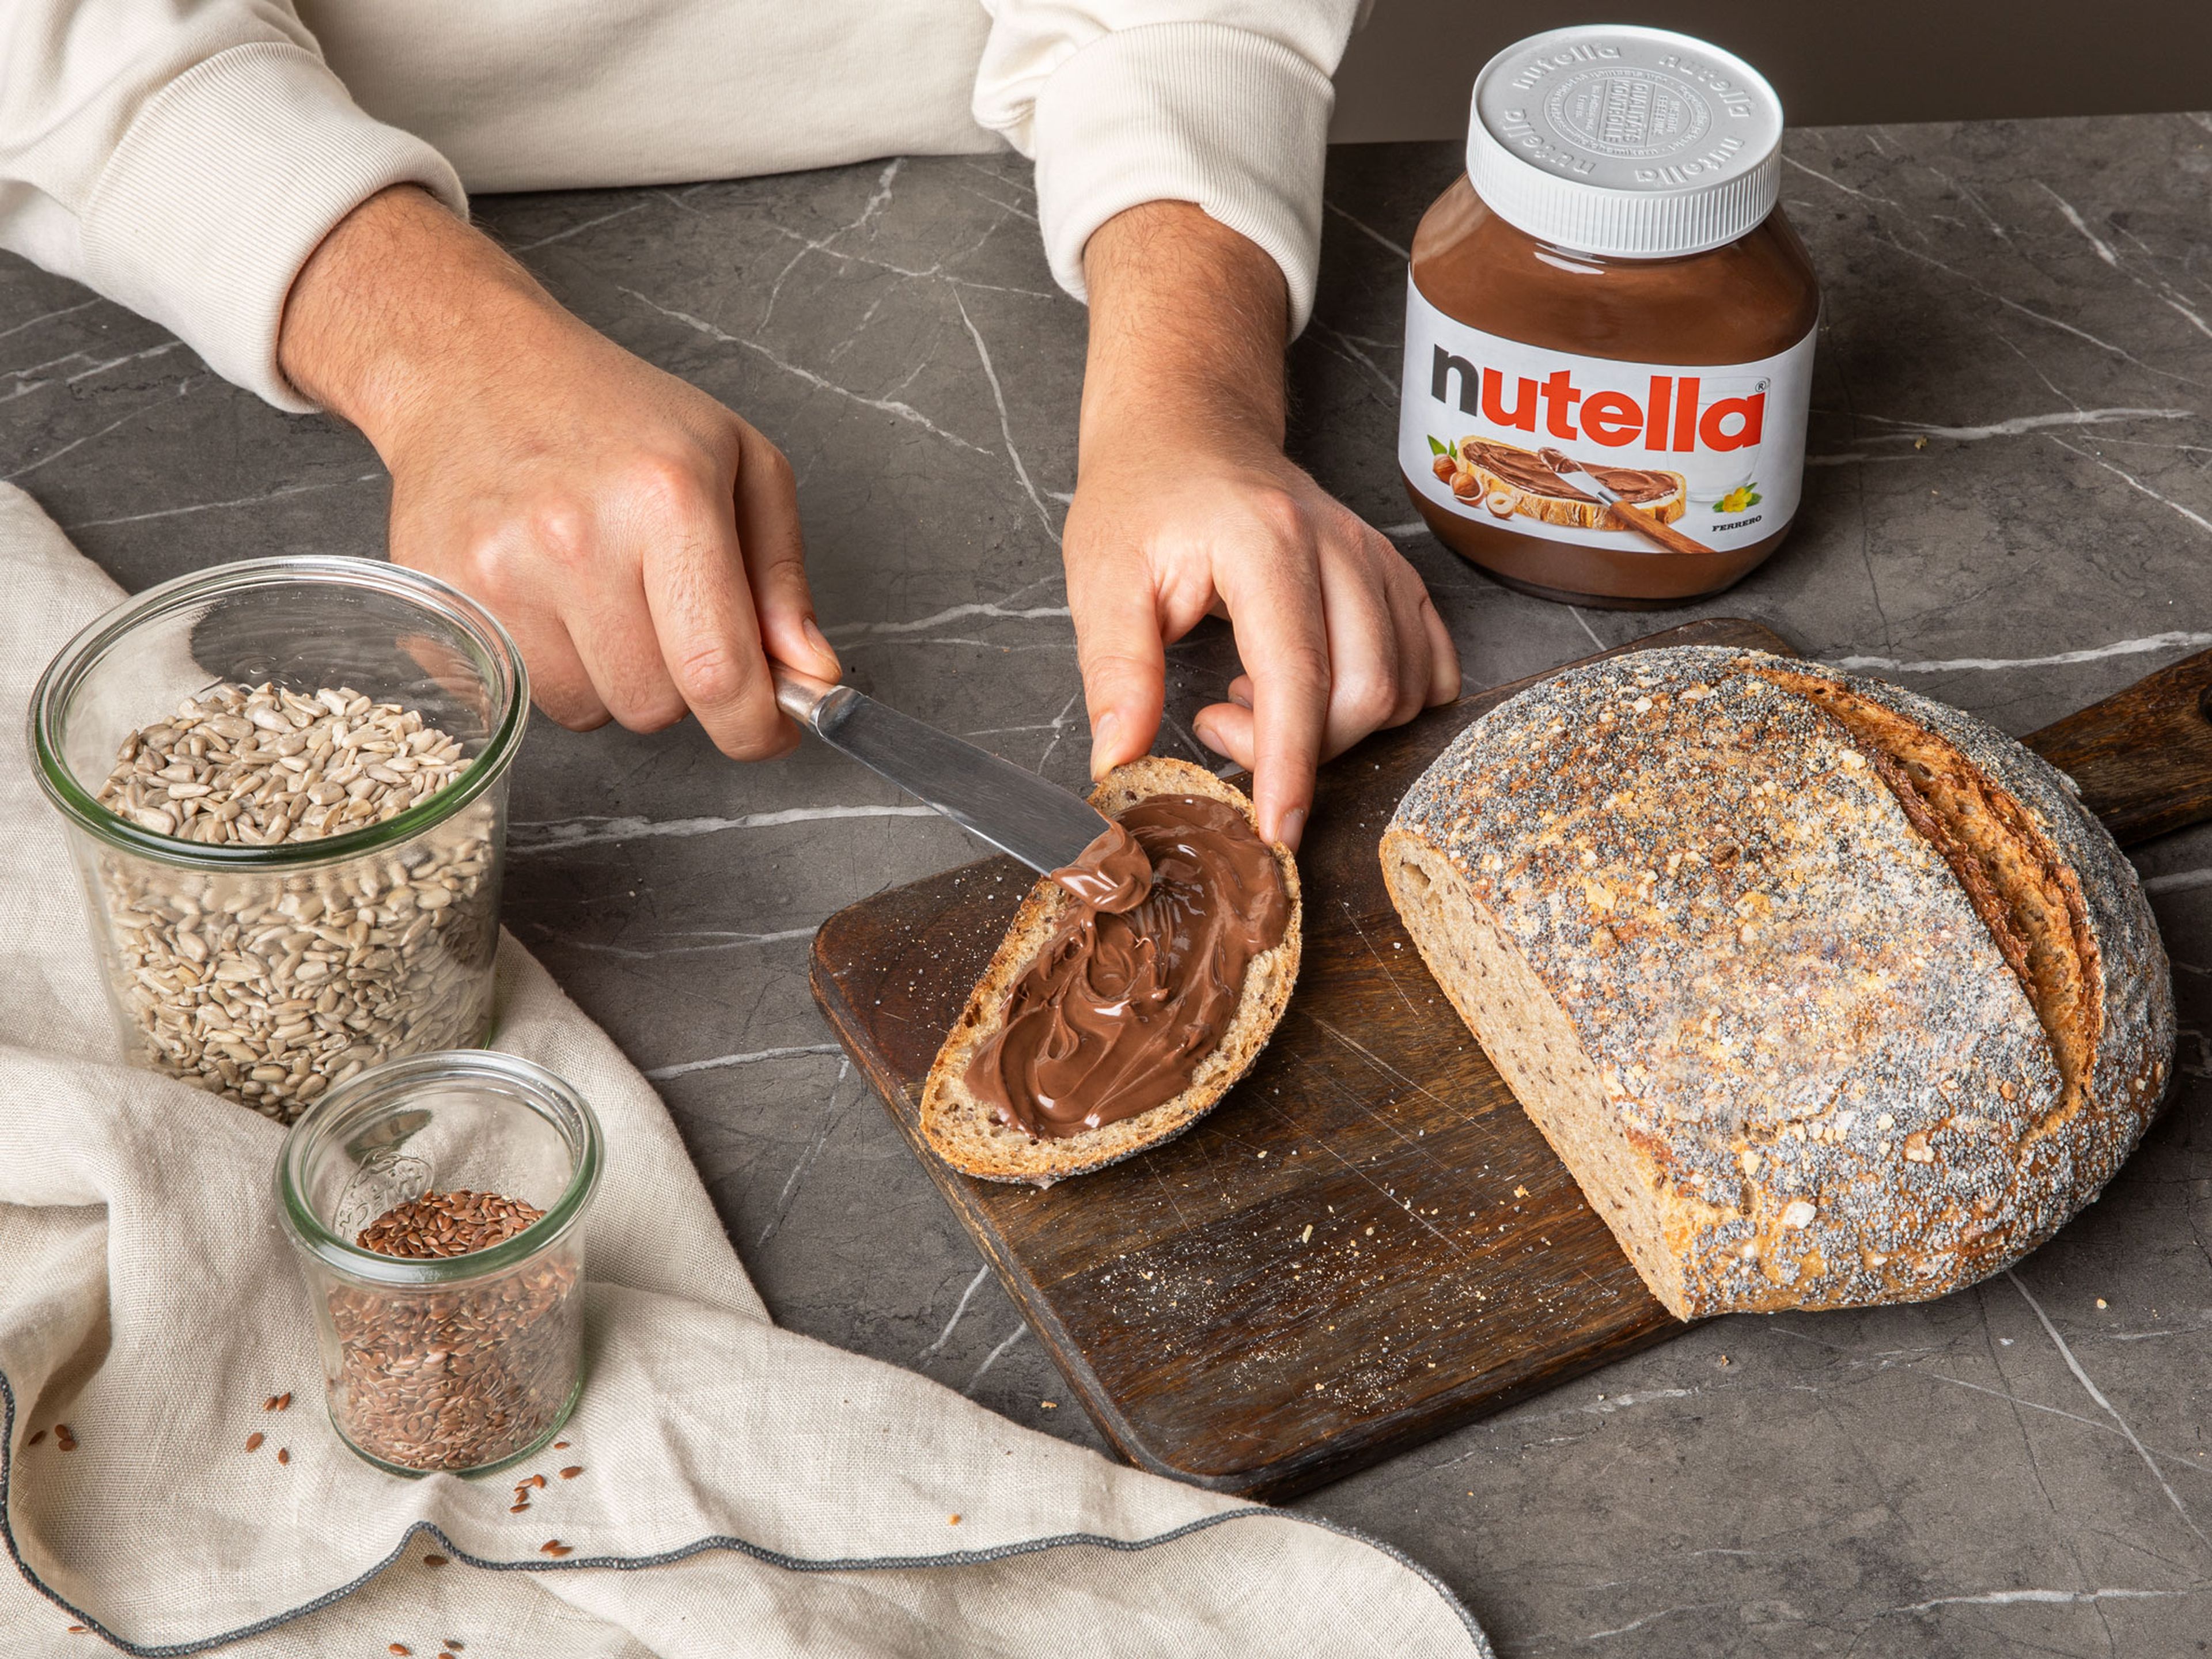 Sobald das Brot vollständig abgekühlt ist, in Scheiben schneiden und mit 15 g nutella® pro Portion bestreichen.